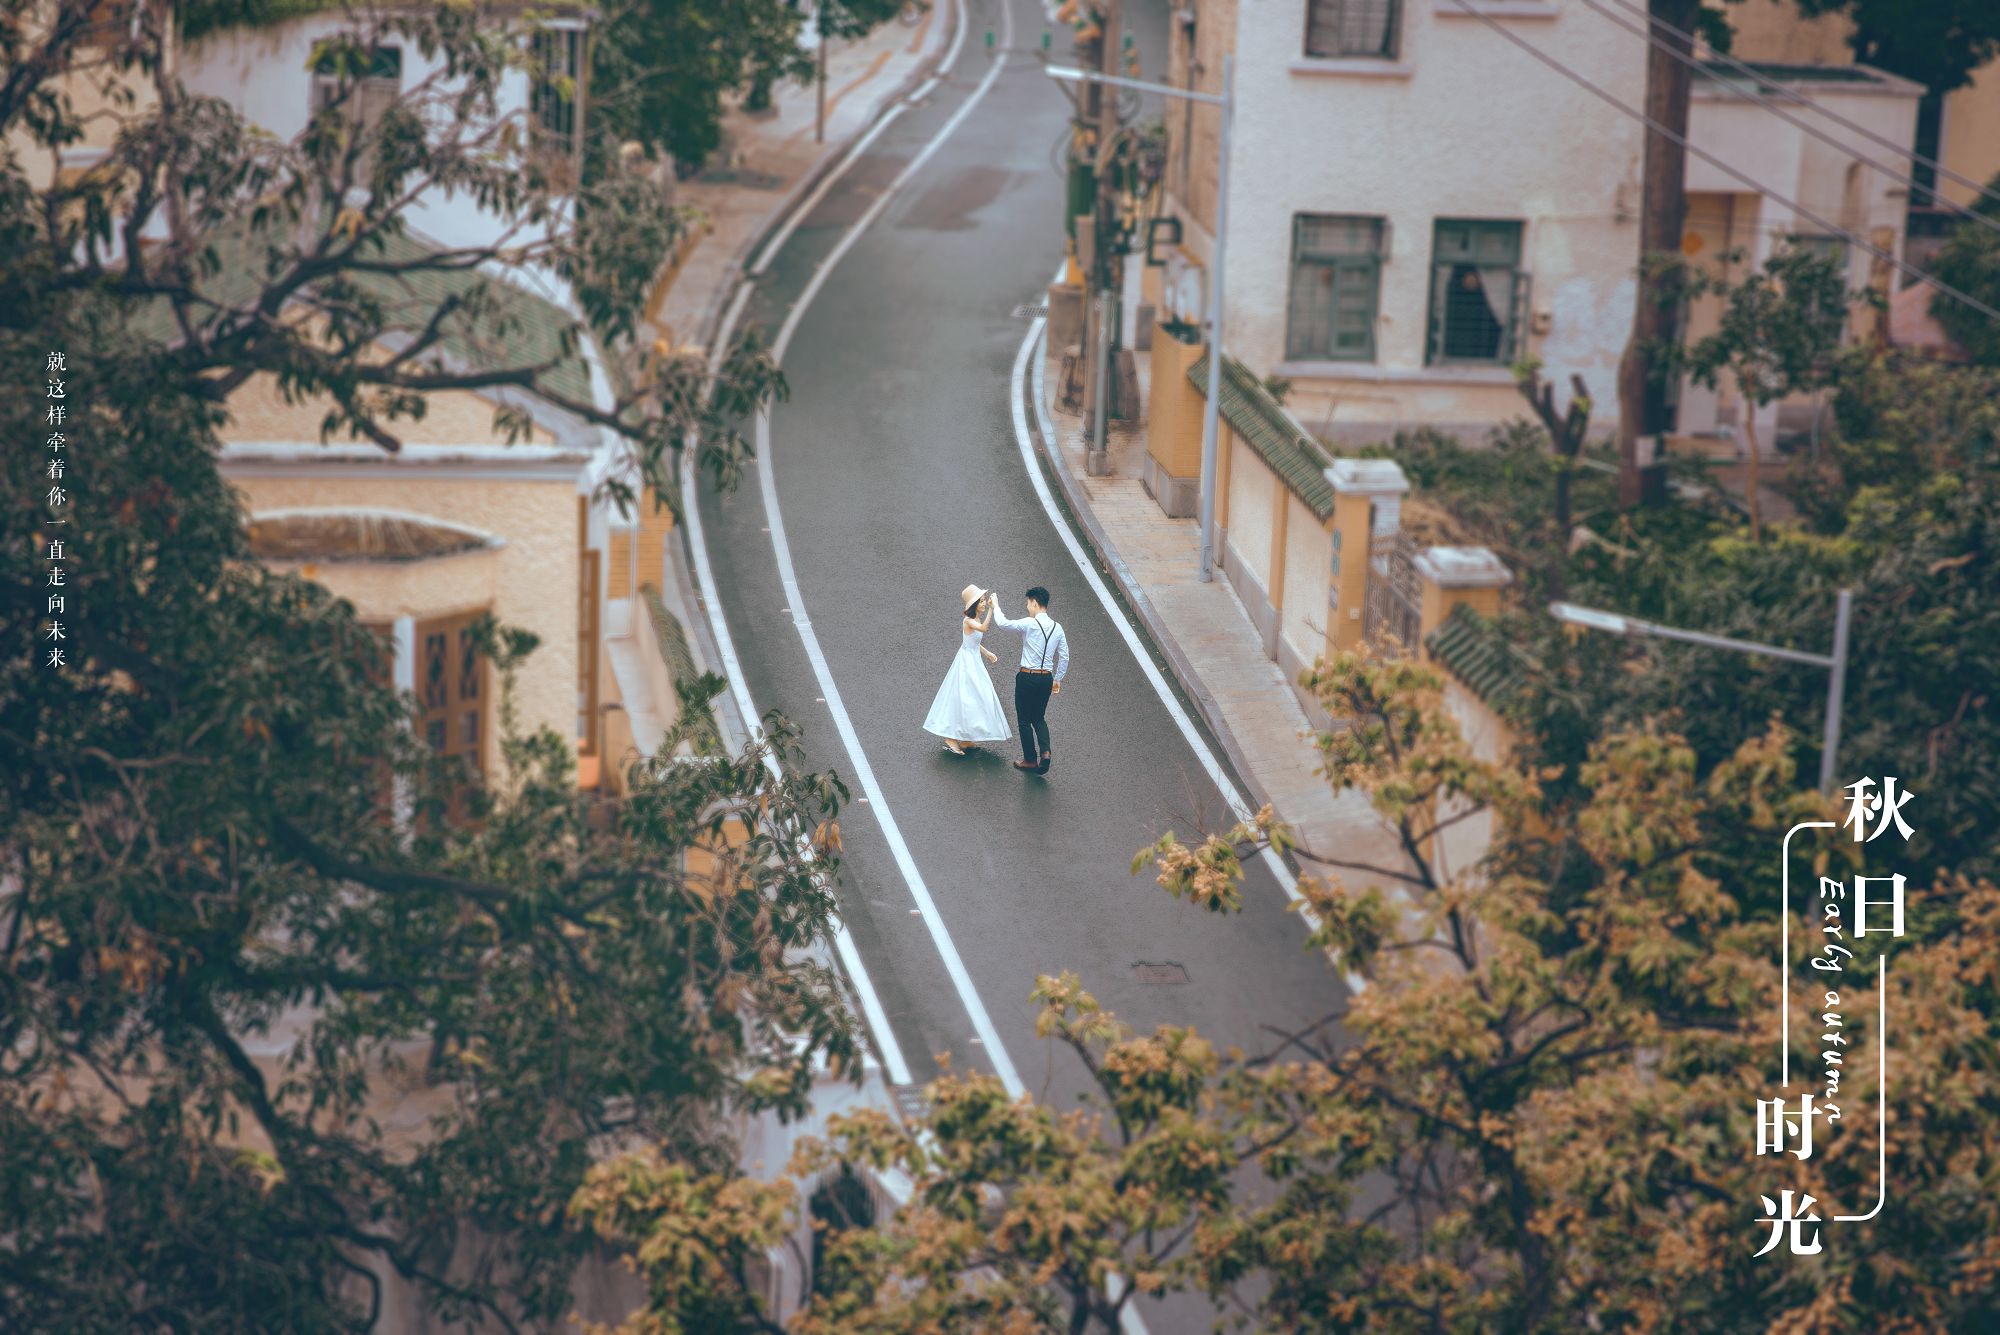 2018年11月广州结婚照,清远婚纱照,婚纱照图片